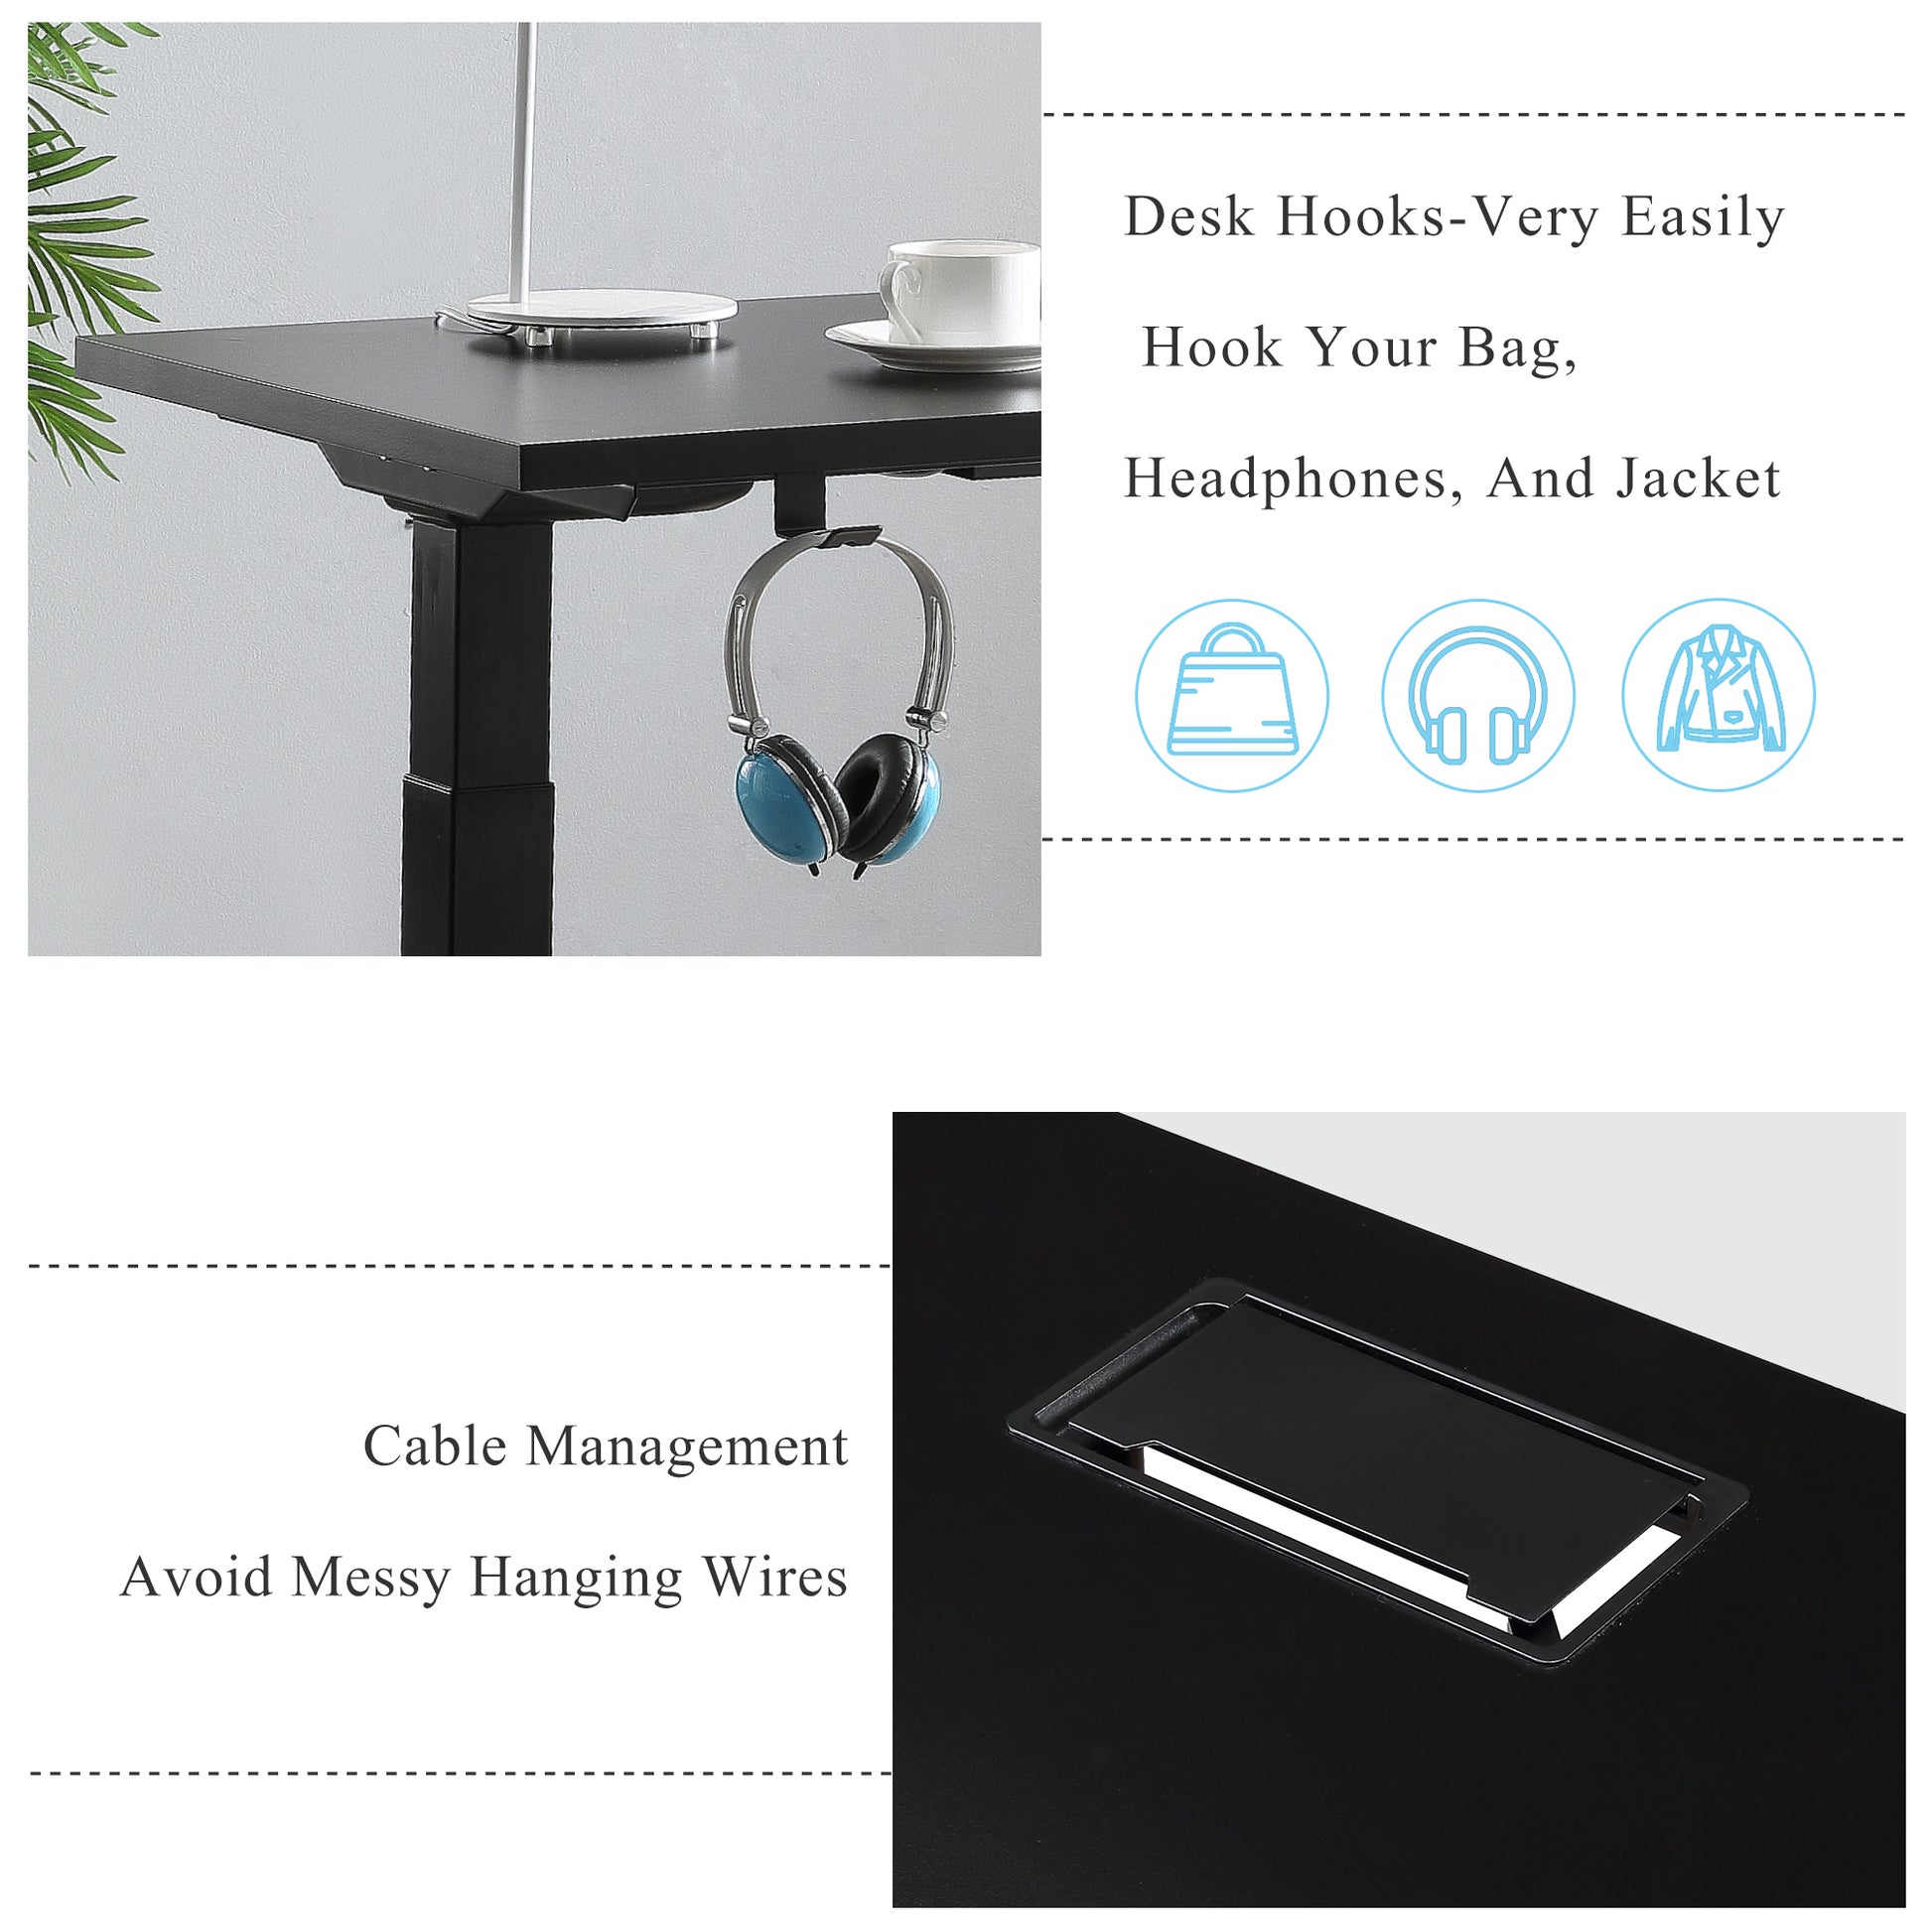 Adjustable Electric Standing Desk Black